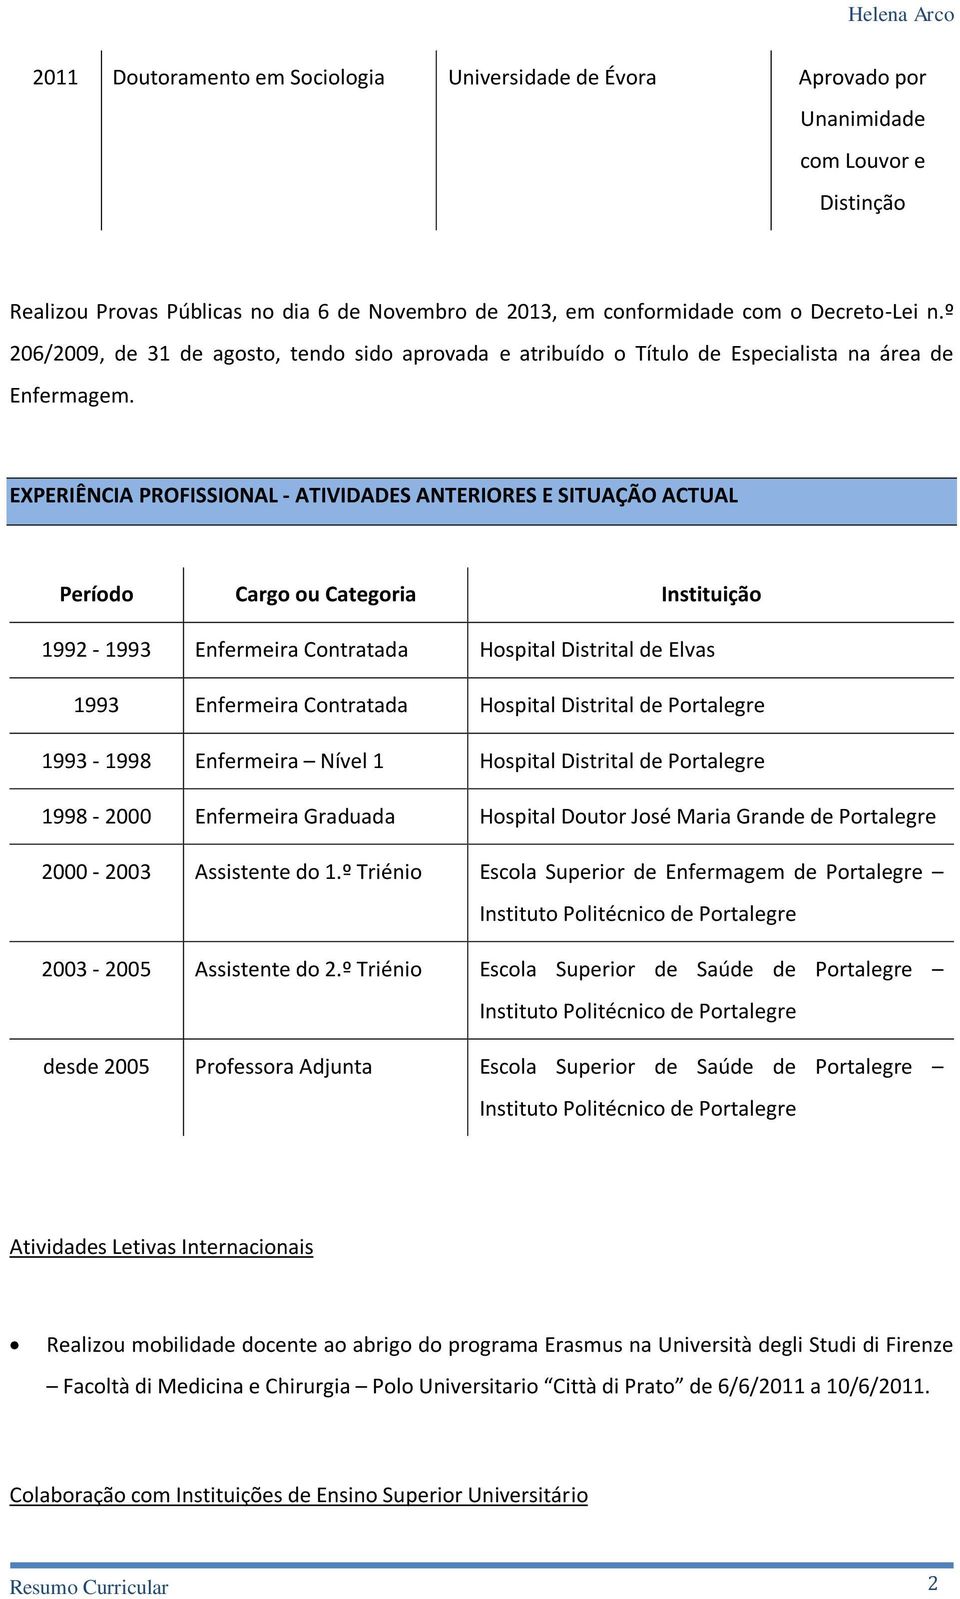 EXPERIÊNCIA PROFISSIONAL - ATIVIDADES ANTERIORES E SITUAÇÃO ACTUAL Período Cargo ou Categoria Instituição 1992-1993 Enfermeira Contratada Hospital Distrital de Elvas 1993 Enfermeira Contratada